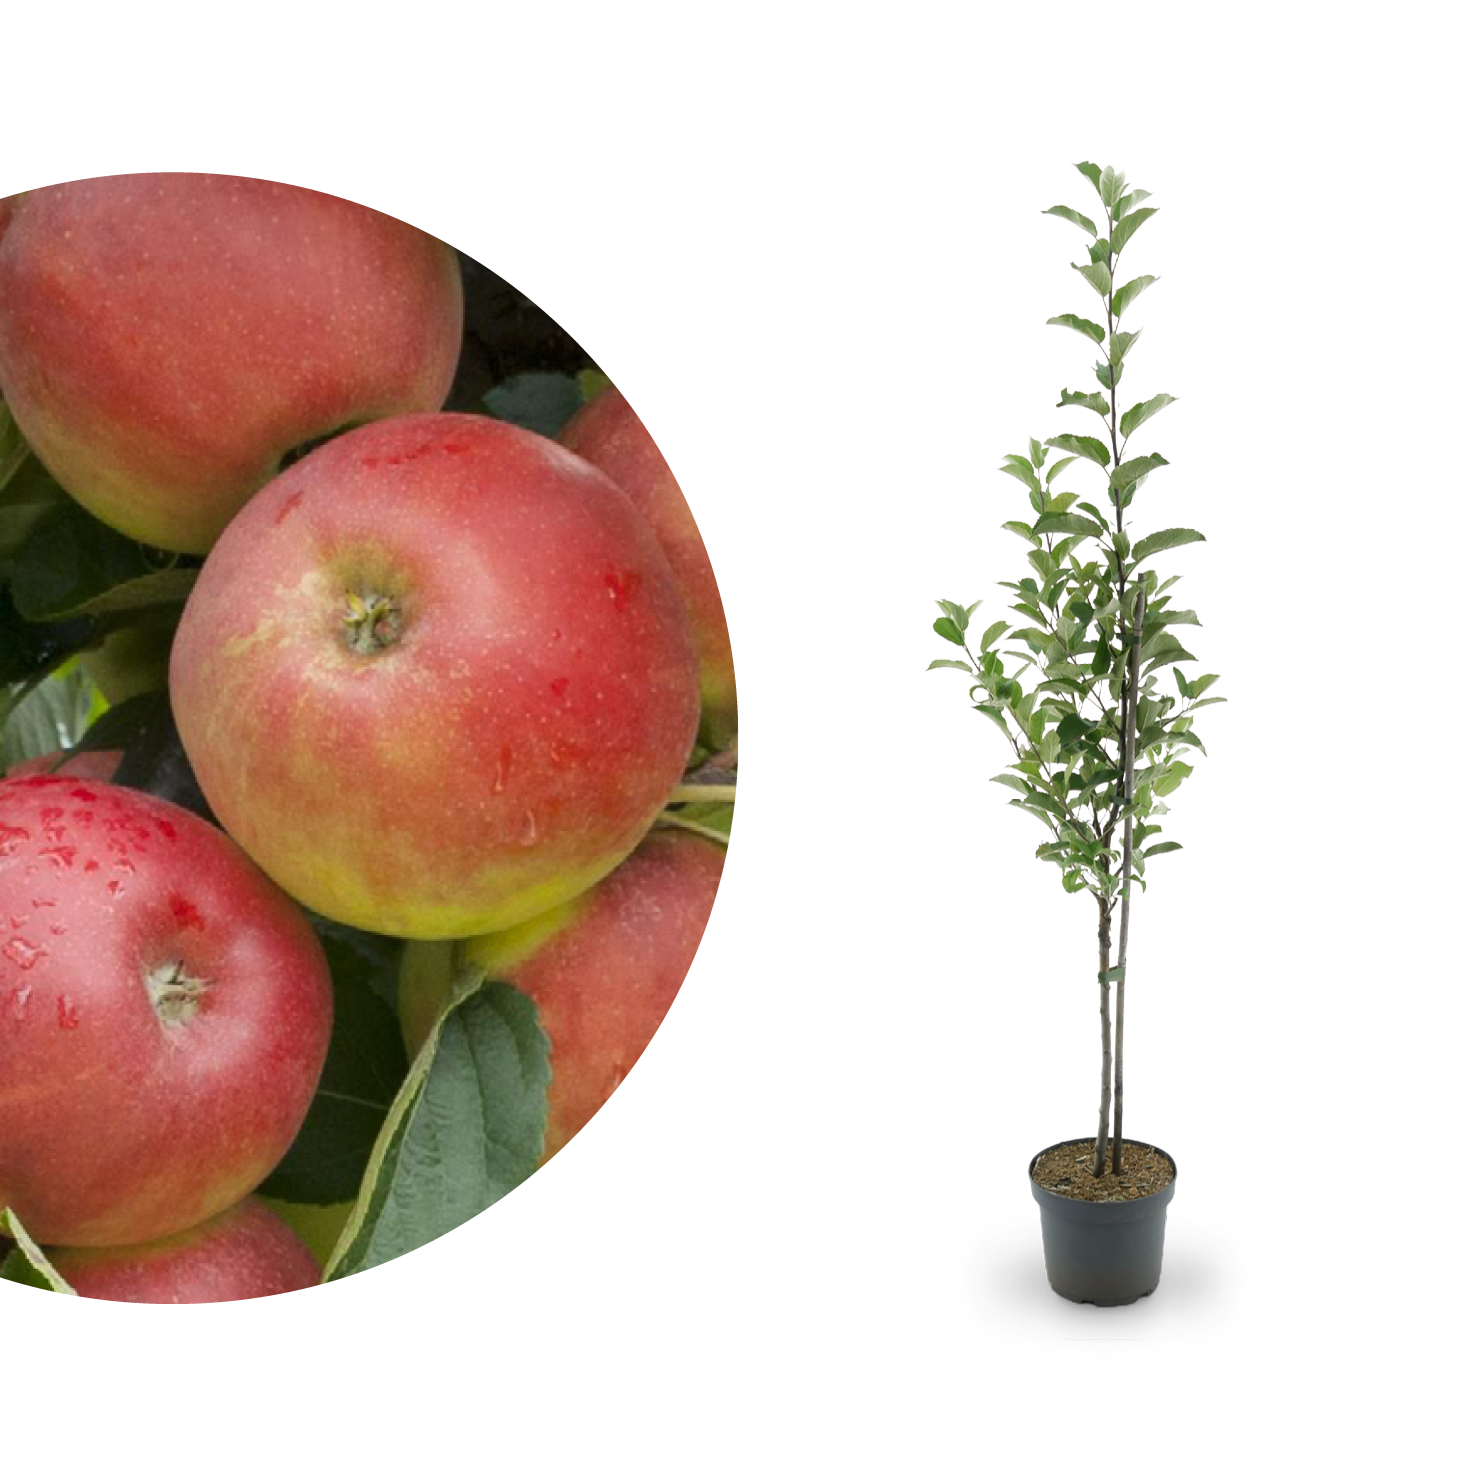 Apfelsorte Elstar: Geschmack, Standort & Ernte - Plantura